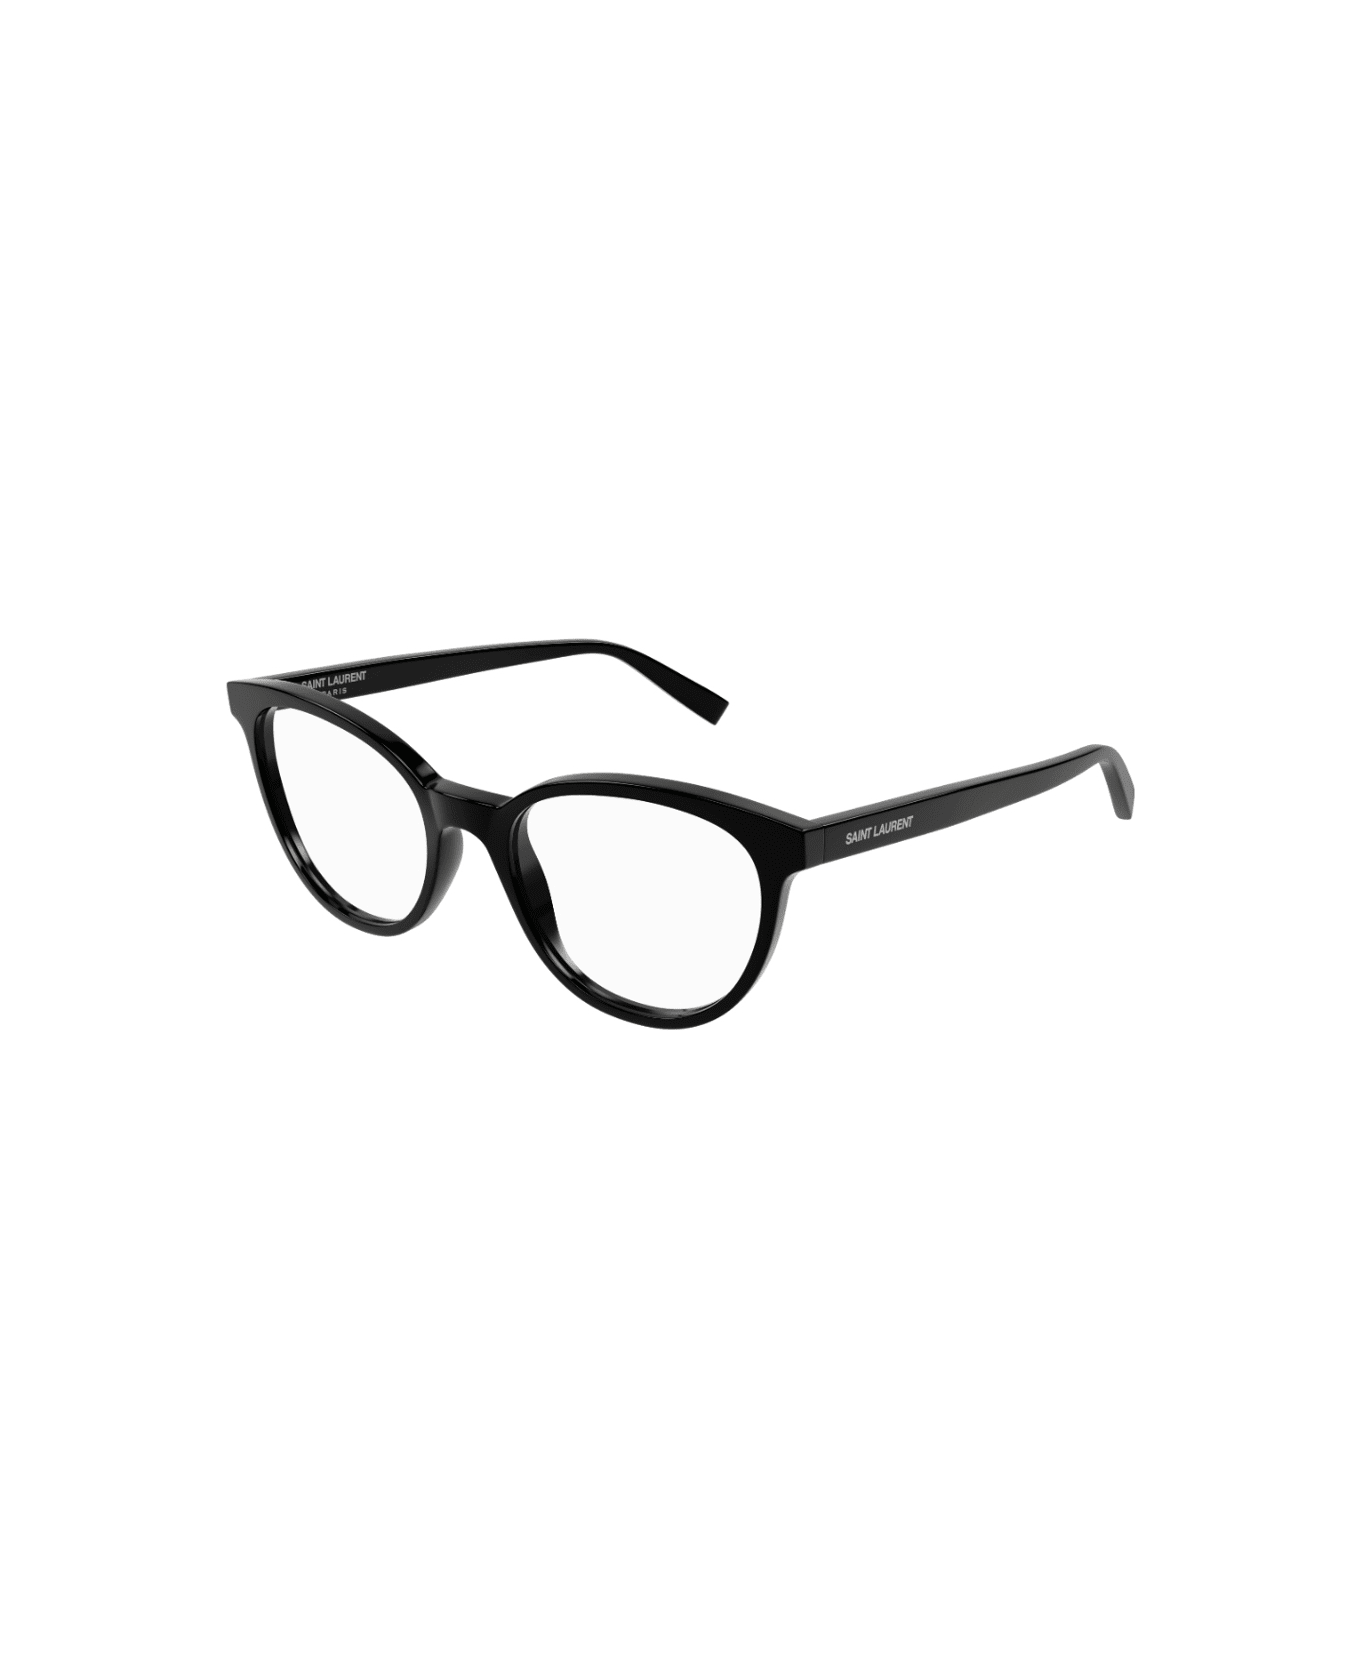 Saint Laurent Eyewear SL 589 001 Glasses アイウェア